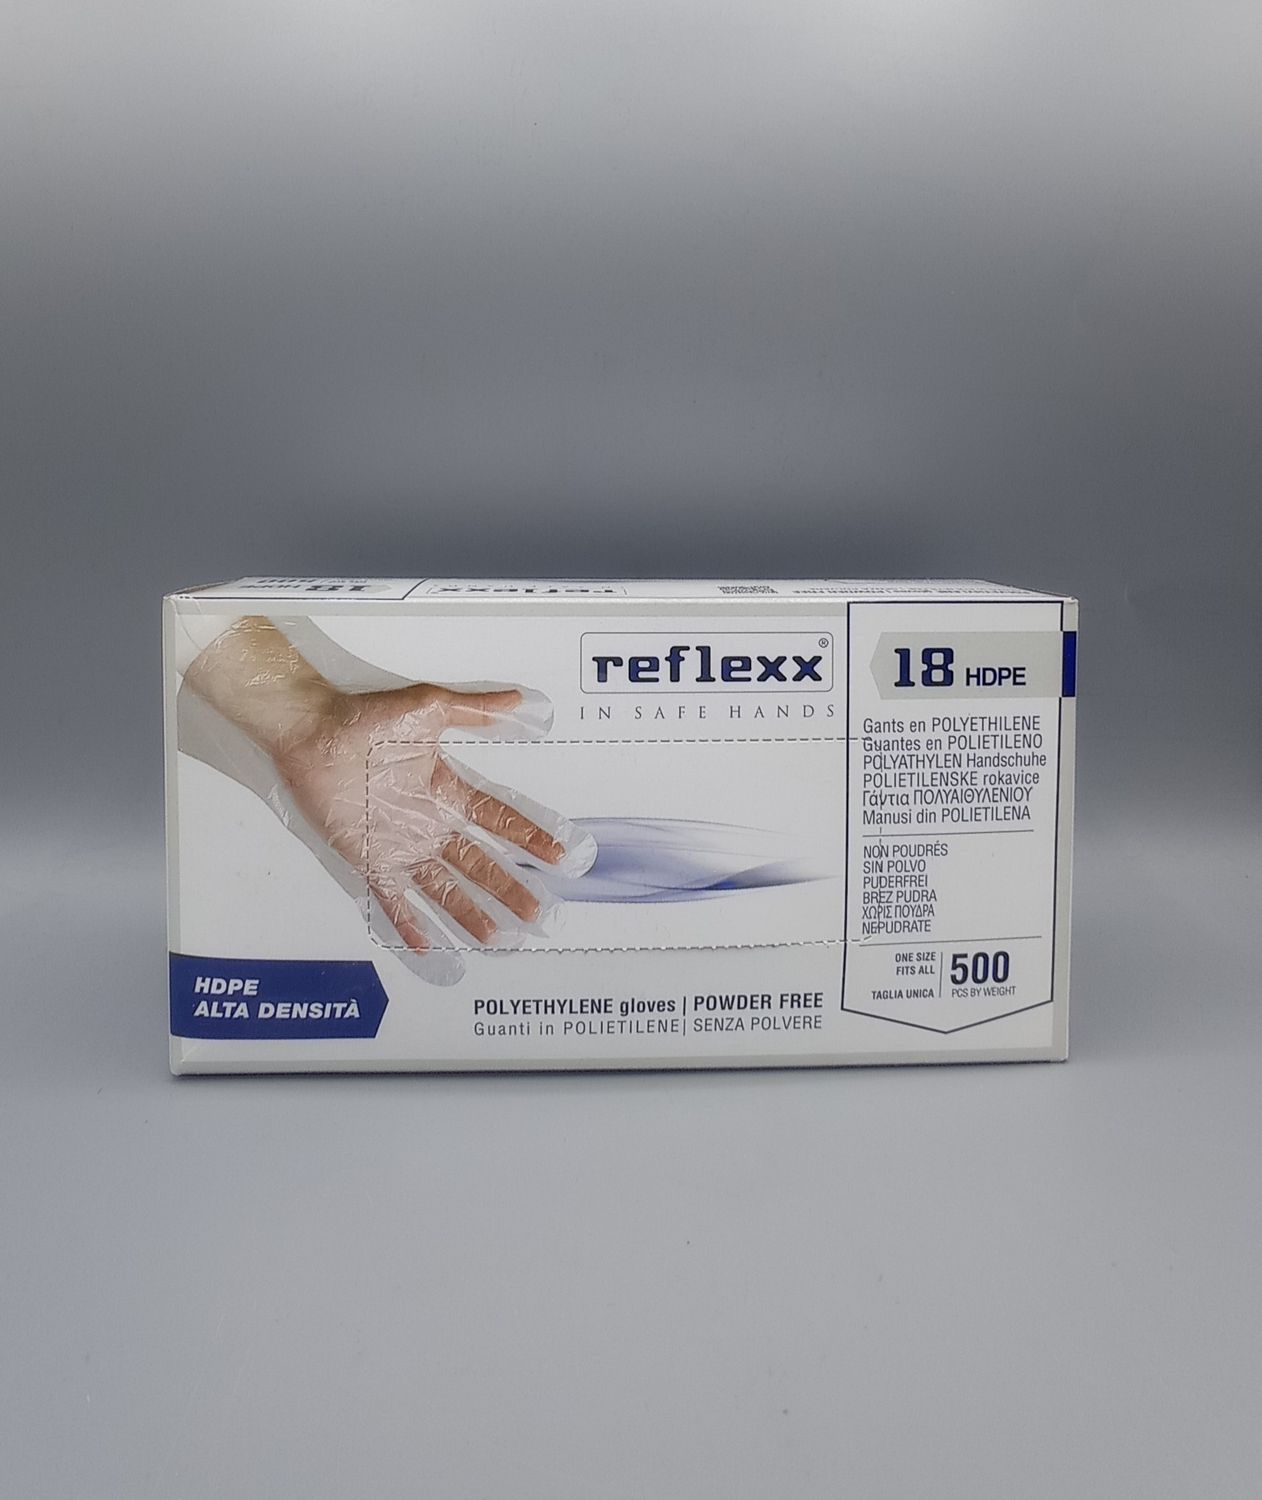 Reflexx 18 HDPE Guanti in Polietilene senza Polvere - Tg unica